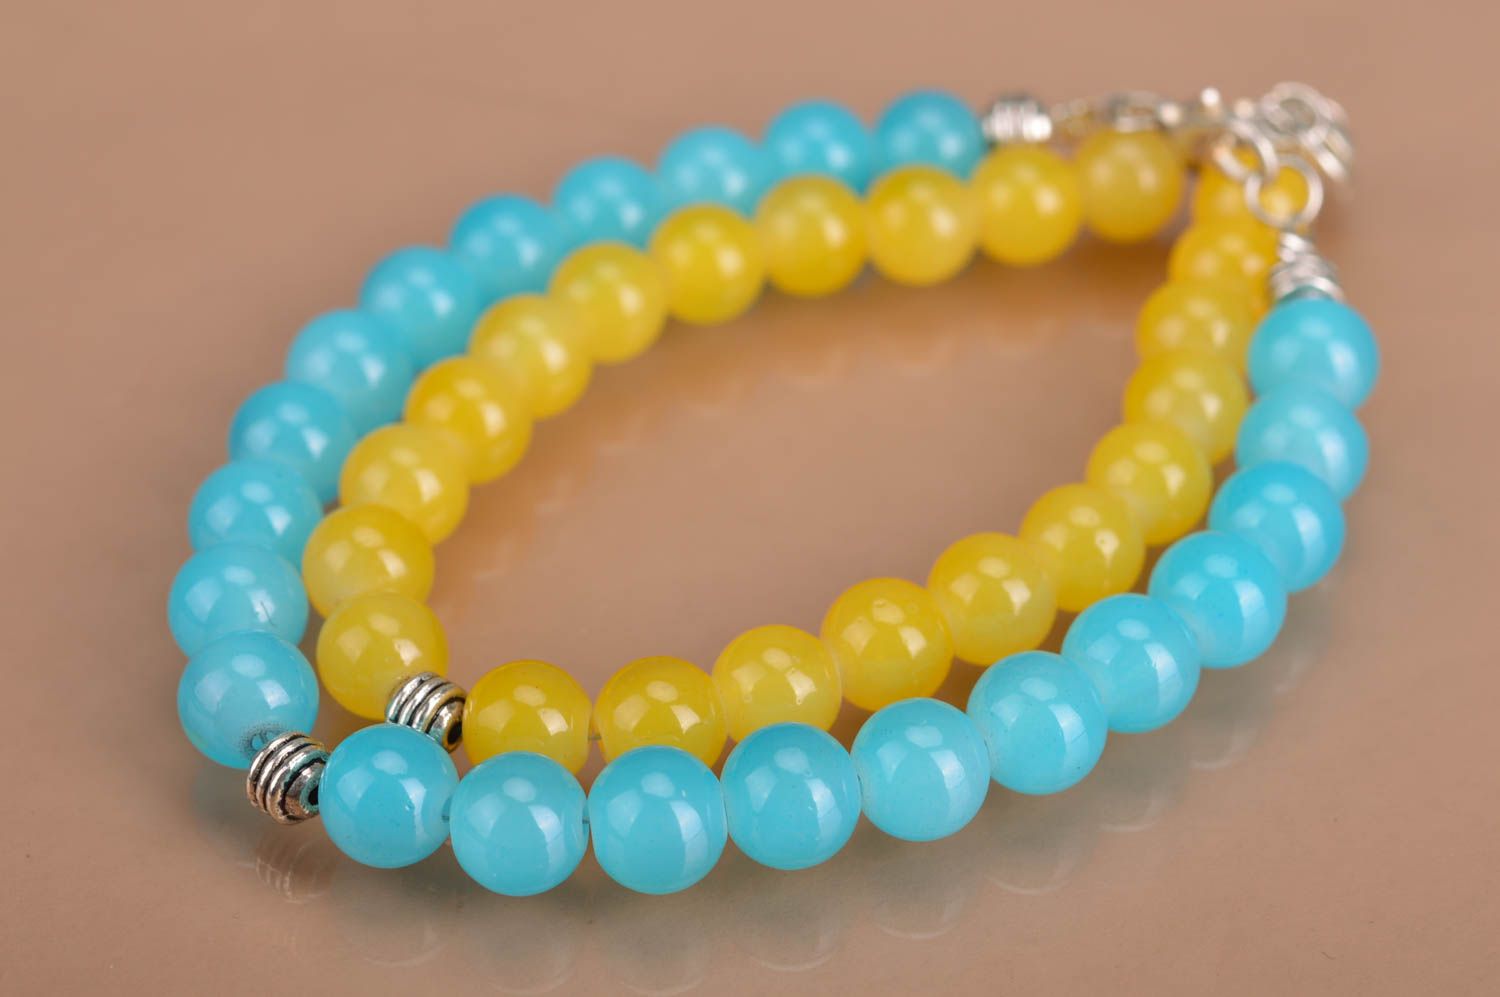 Handmade Neon Perlen Armbänder Set 2 Stück in Gelb und Blau Designer Accessoires foto 2